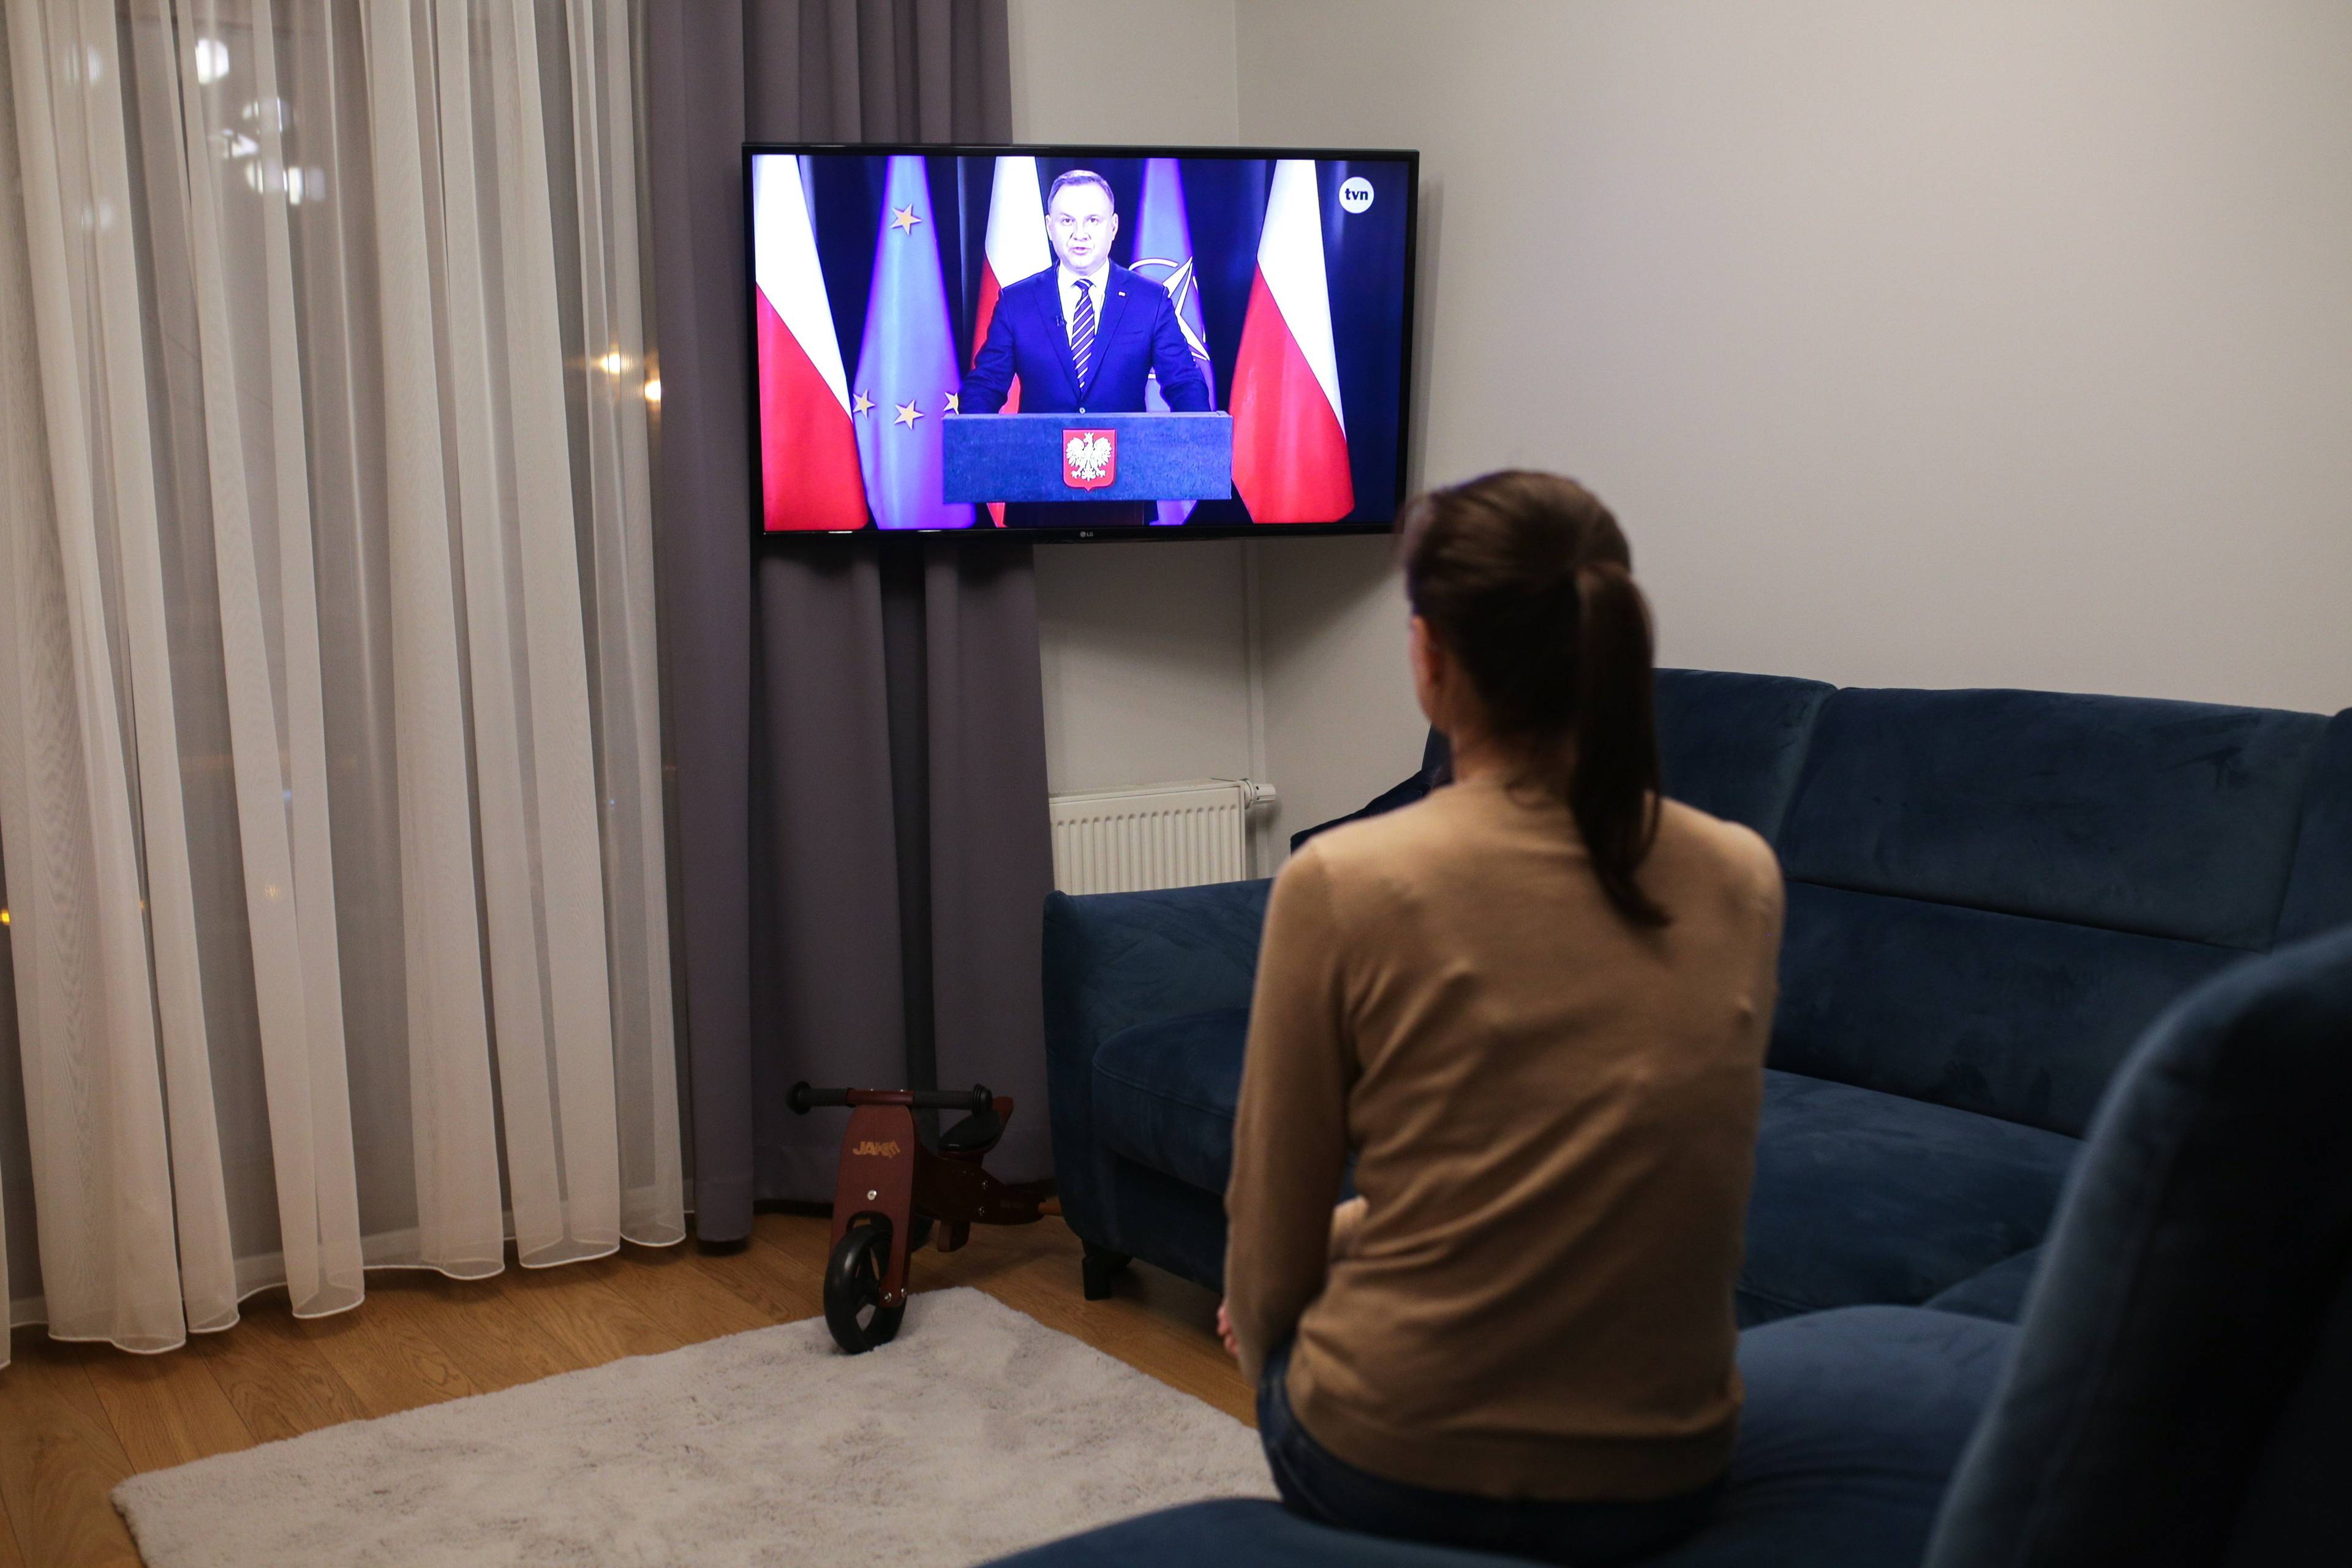 Kobieta siedzi na kanapie, patrzy w telewizor, na którym przemawia prezydent Andrzej Duda